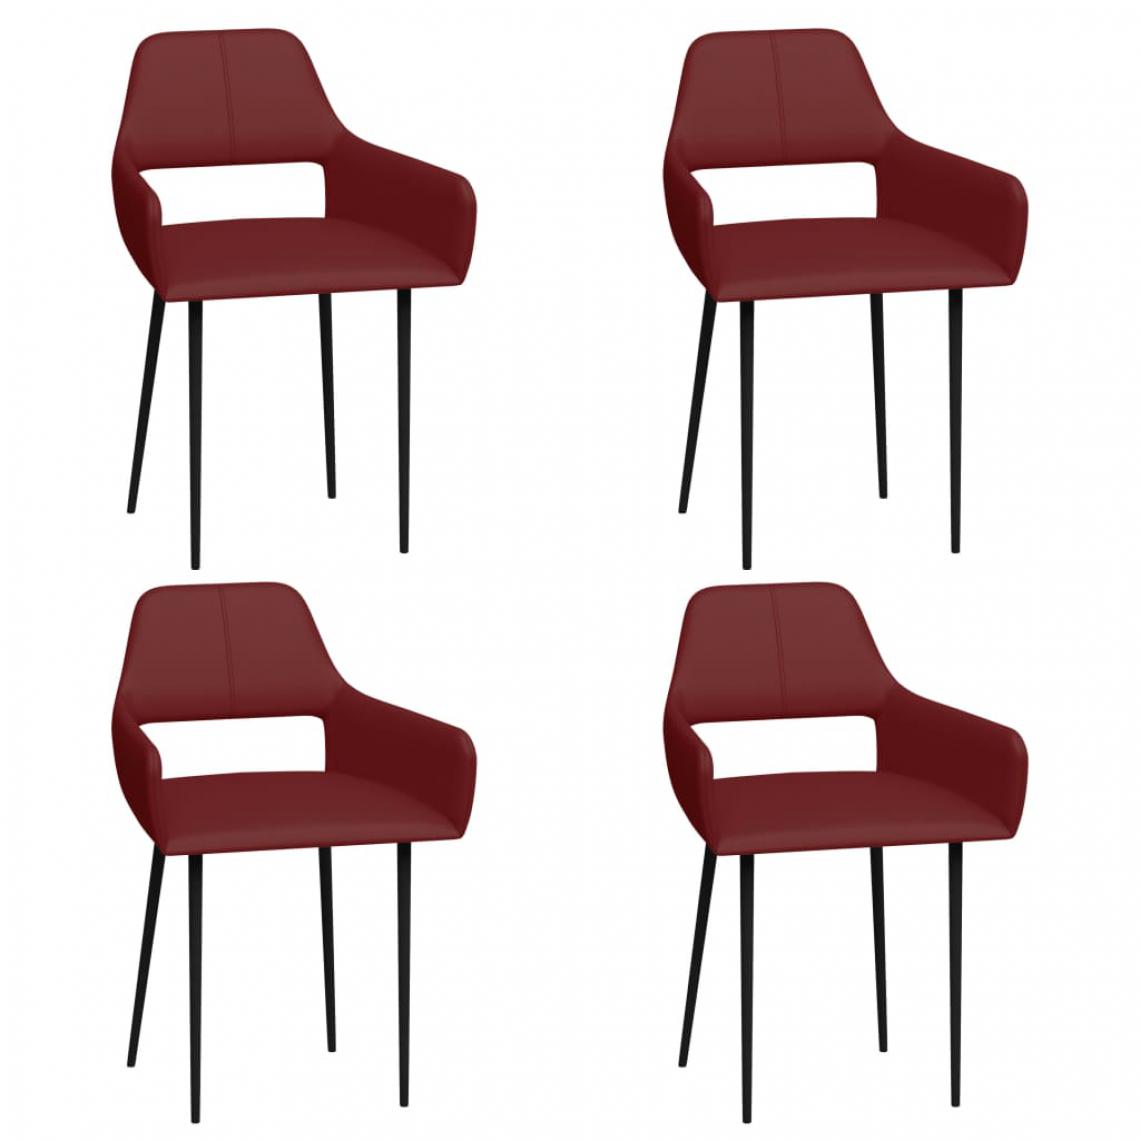 Icaverne - Distingué Fauteuils et chaises edition Lisbonne Chaises de salle à manger 4 pcs Rouge bordeaux Similicuir - Chaises